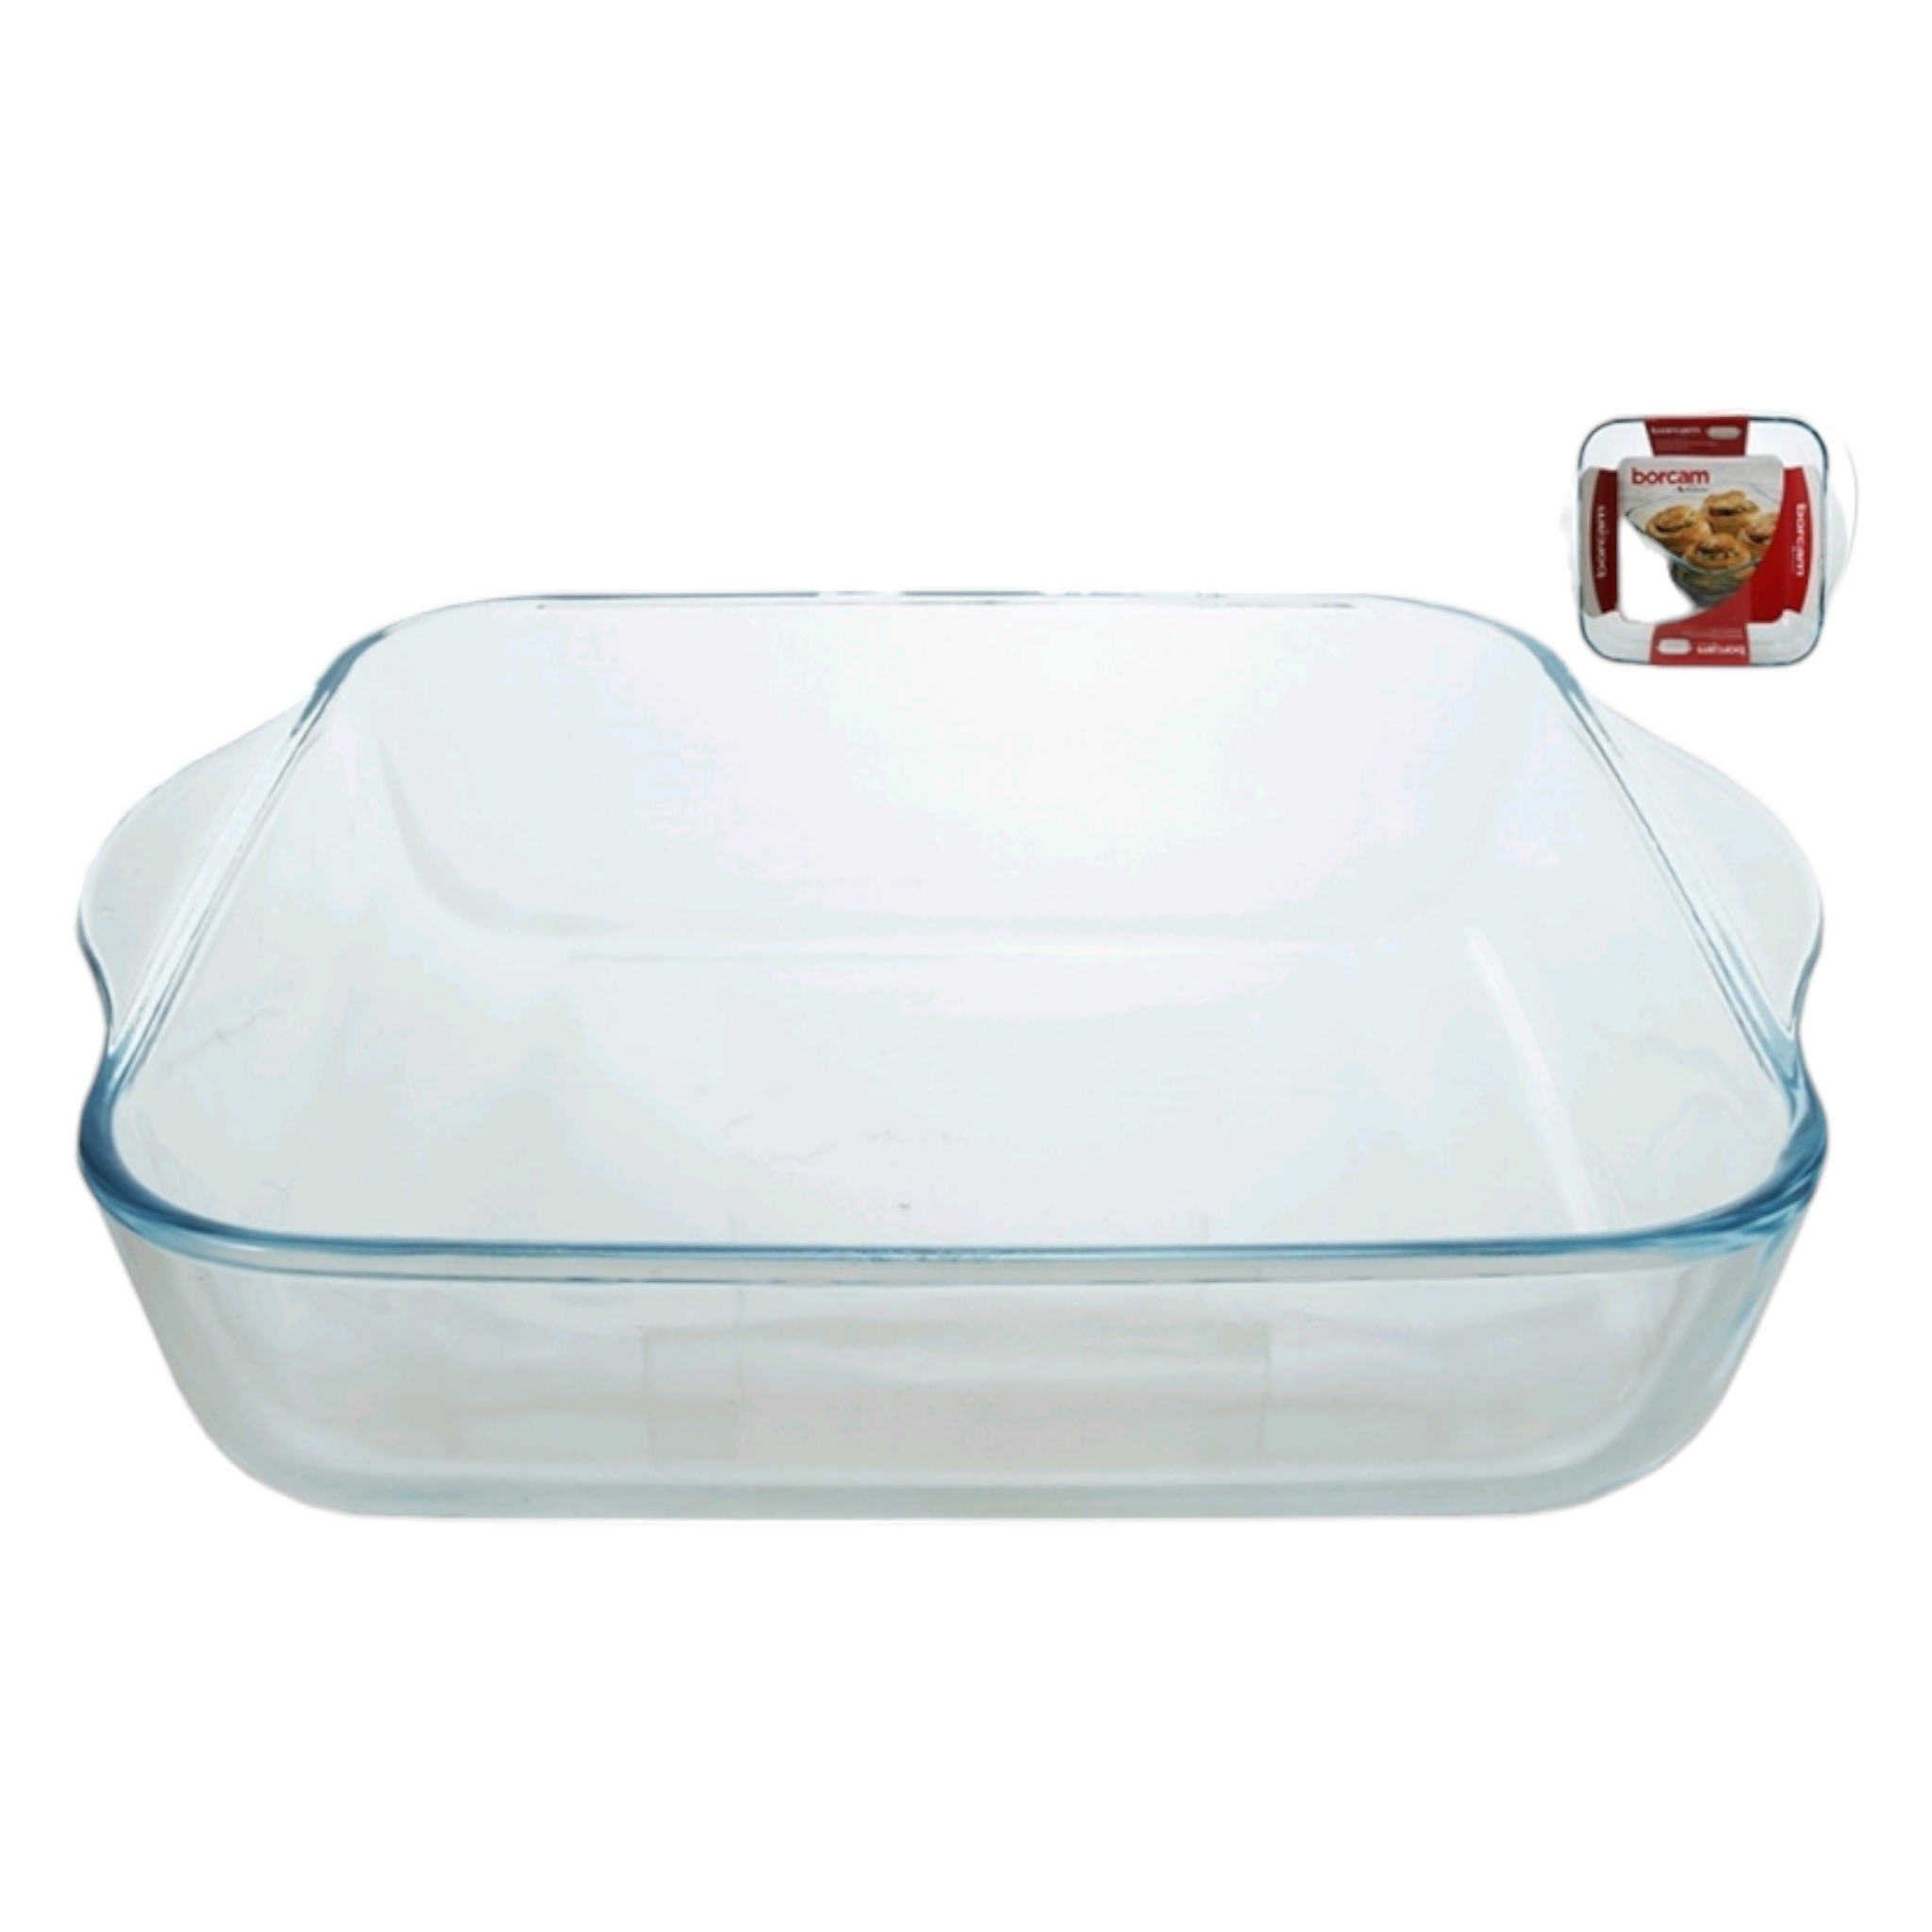 Borcam Glass Serving Dish Square Tray 1.9L 23834